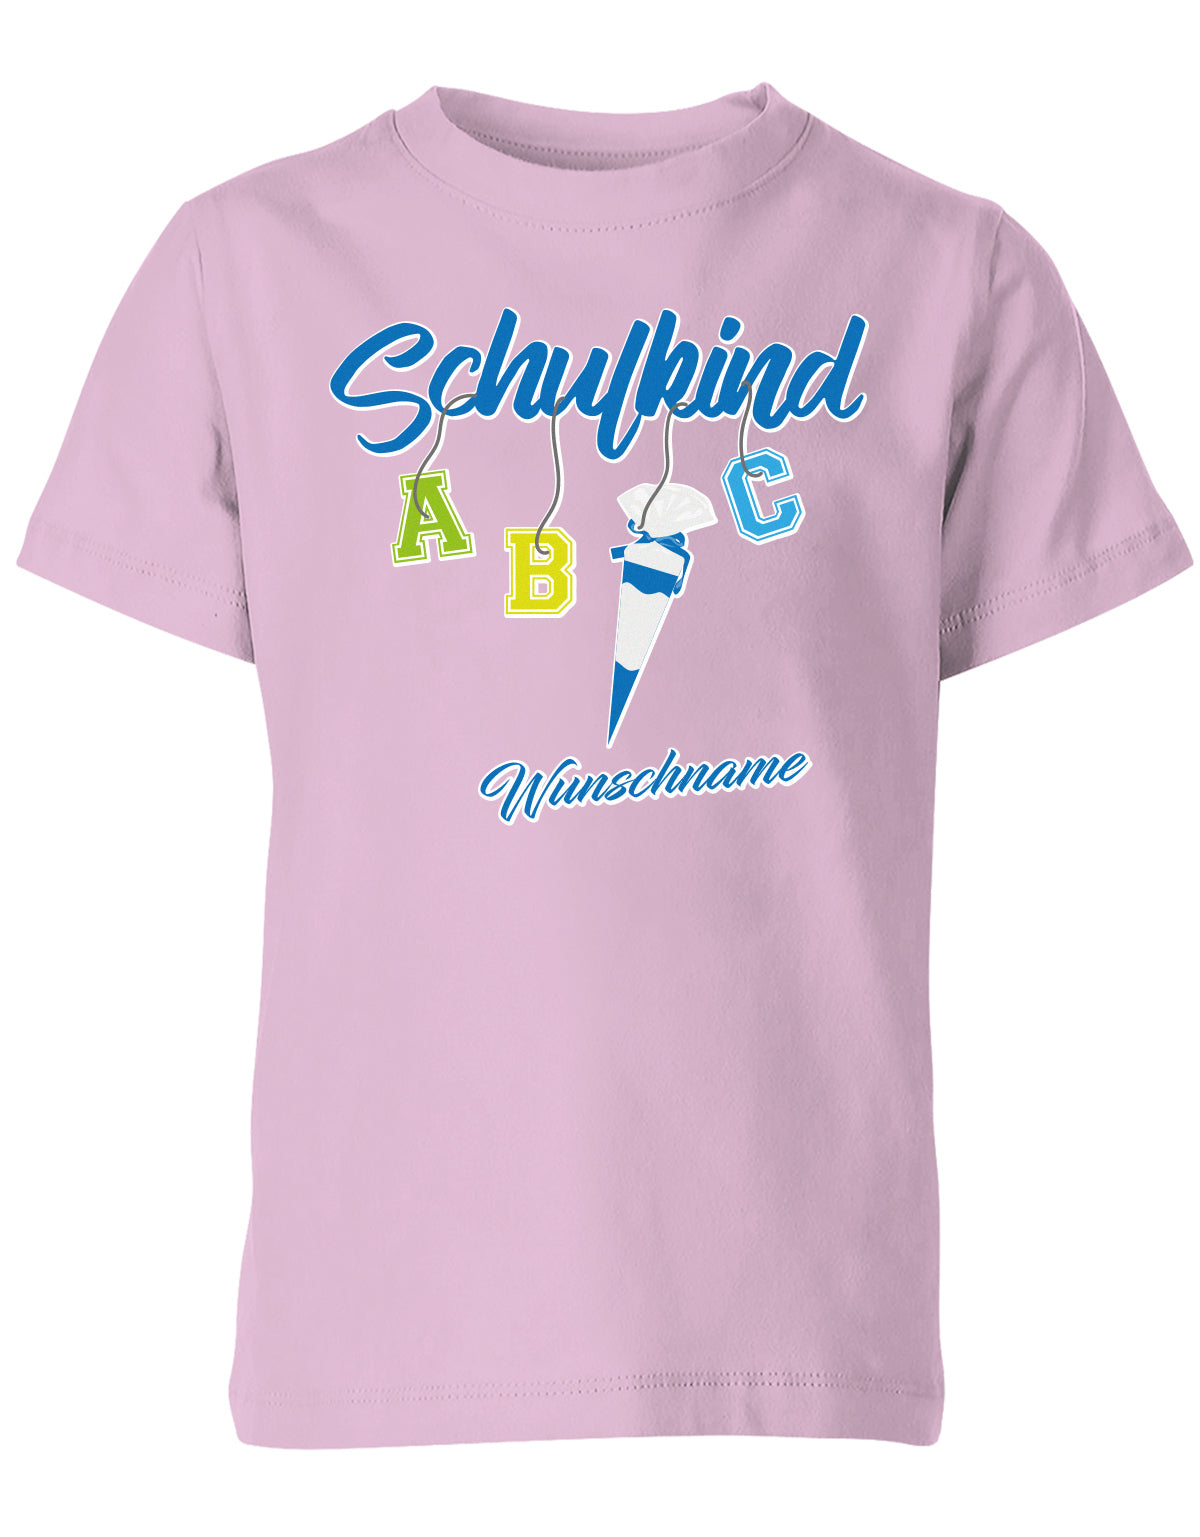 Schulkind ABC Schultüte Wunschname Blau oder Pink Einschulung Kinder T-Shirt Rosa Blau